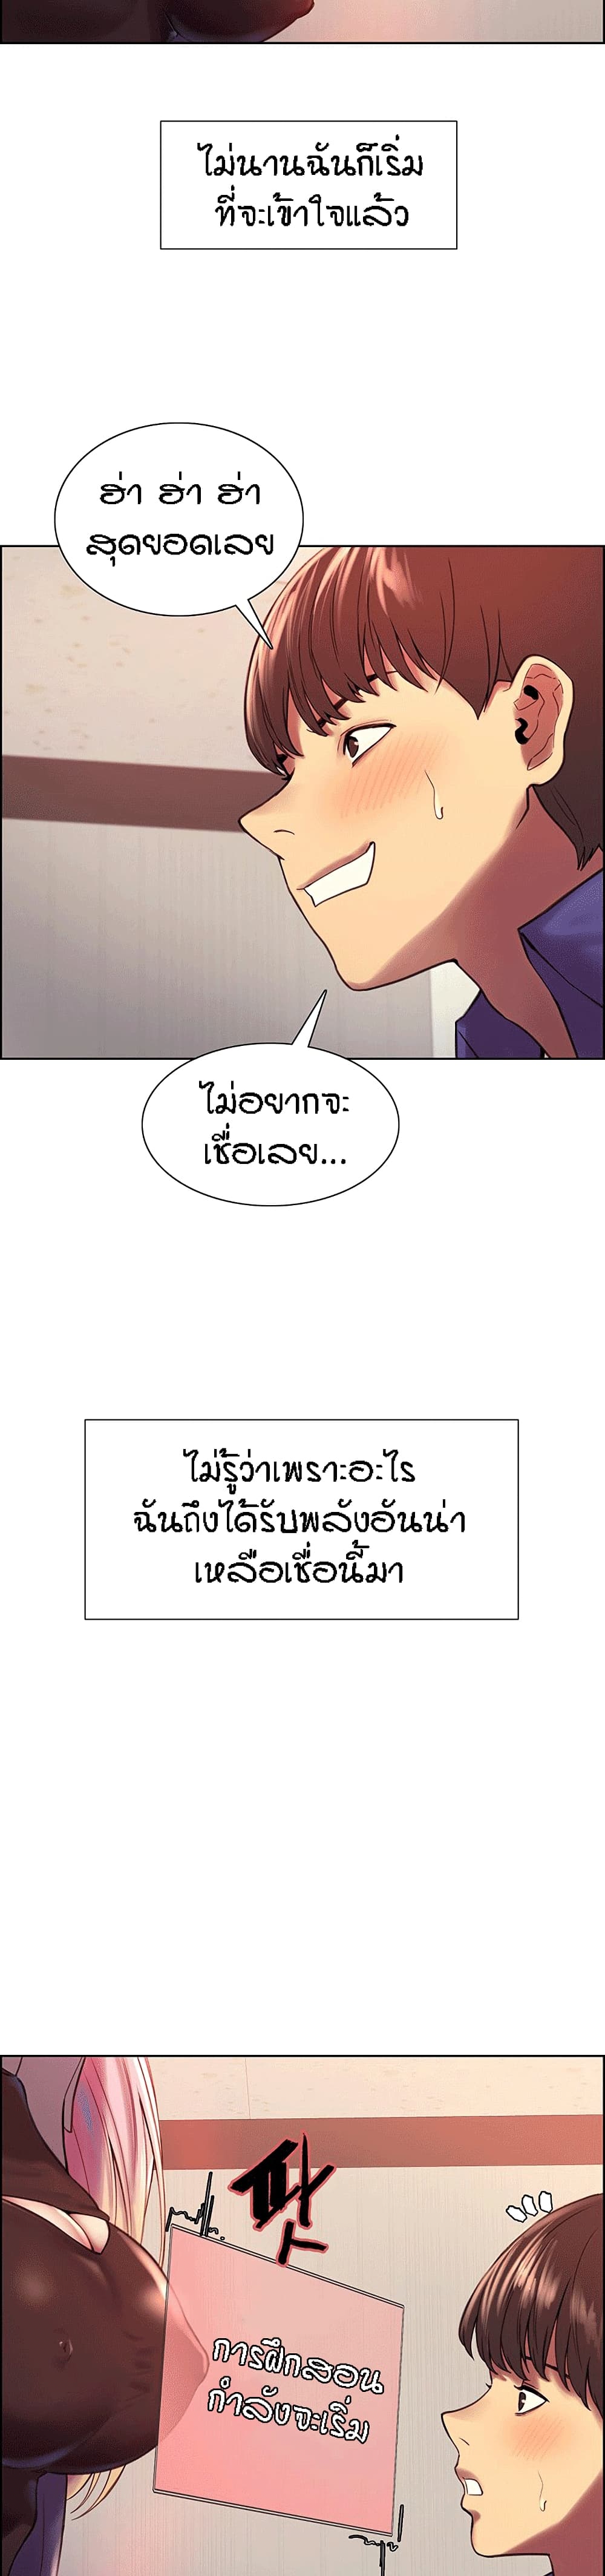 อ่านการ์ตูน Sex Stop Watch 2 Th แปลไทย อัพเดทรวดเร็วทันใจที่ Kingsmanga